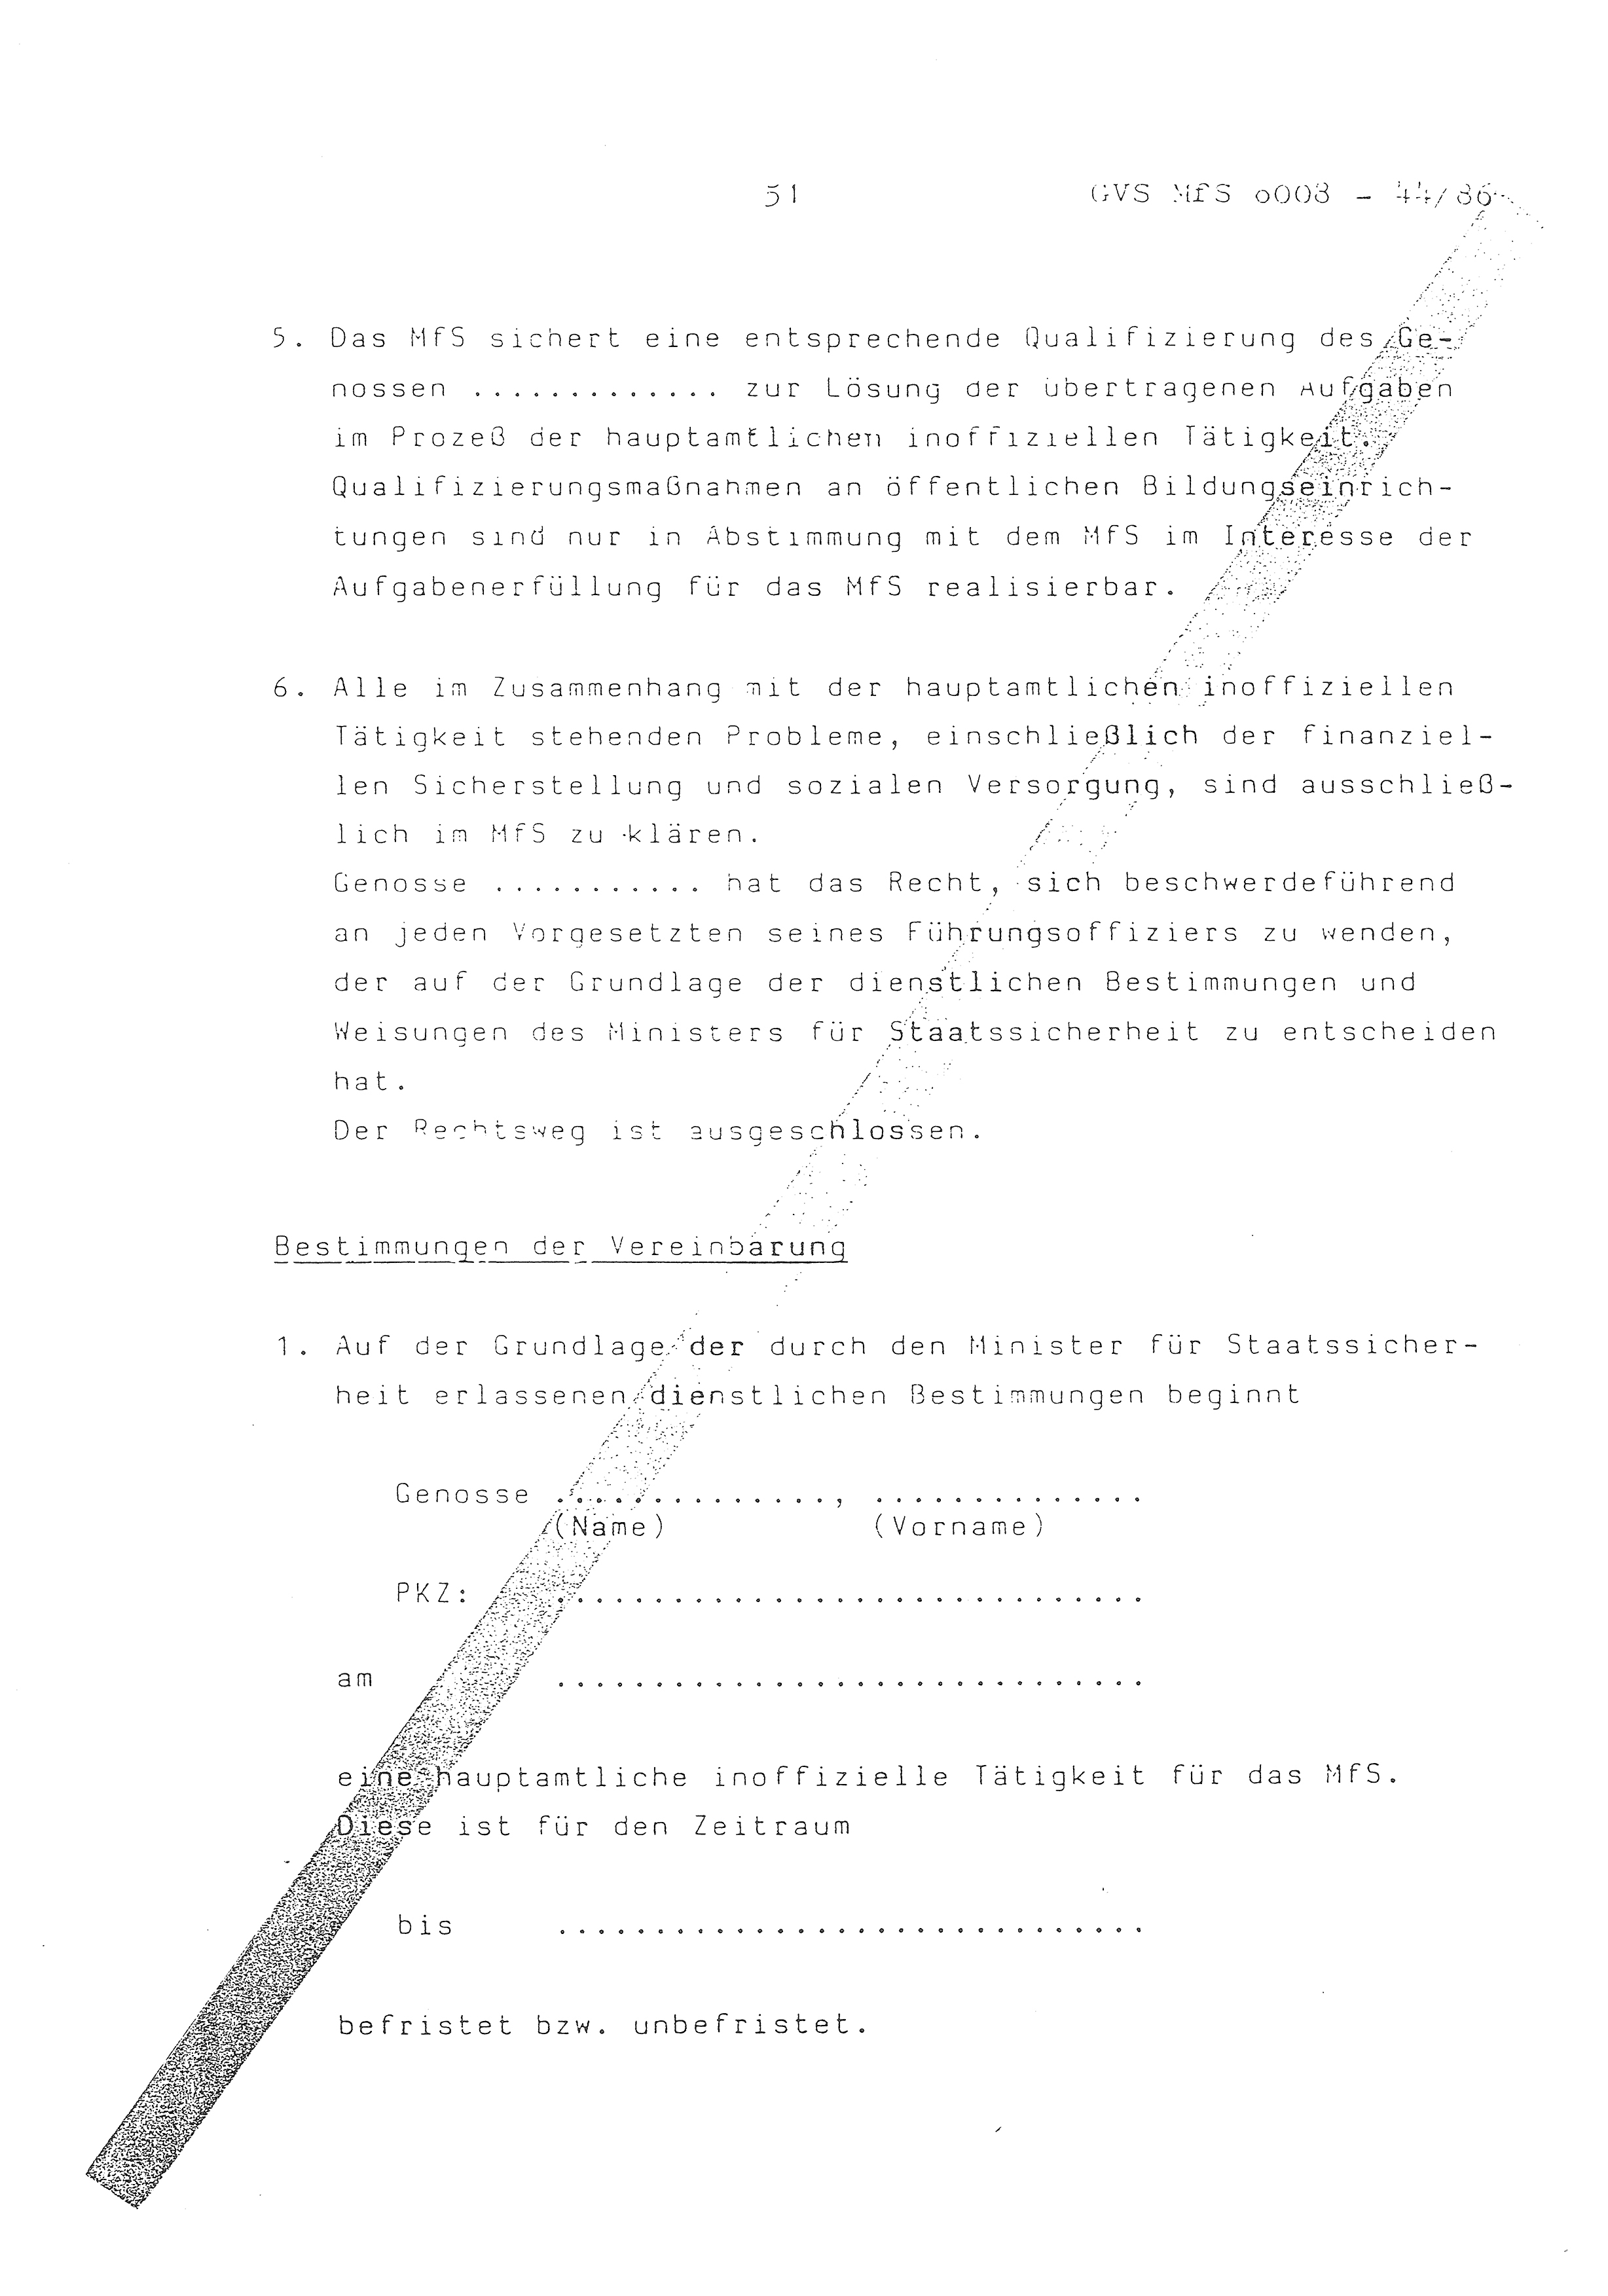 2. Durchführungsbestimmung zur Richtlinie 1/79 über die Arbeit mit hauptamtlichen Mitarbeitern des MfS (HIM), Deutsche Demokratische Republik (DDR), Ministerium für Staatssicherheit (MfS), Der Minister (Mielke), Geheime Verschlußsache (GVS) ooo8-44/86, Berlin 1986, Seite 51 (2. DB RL 1/79 DDR MfS Min. GVS ooo8-44/86 1986, S. 51)